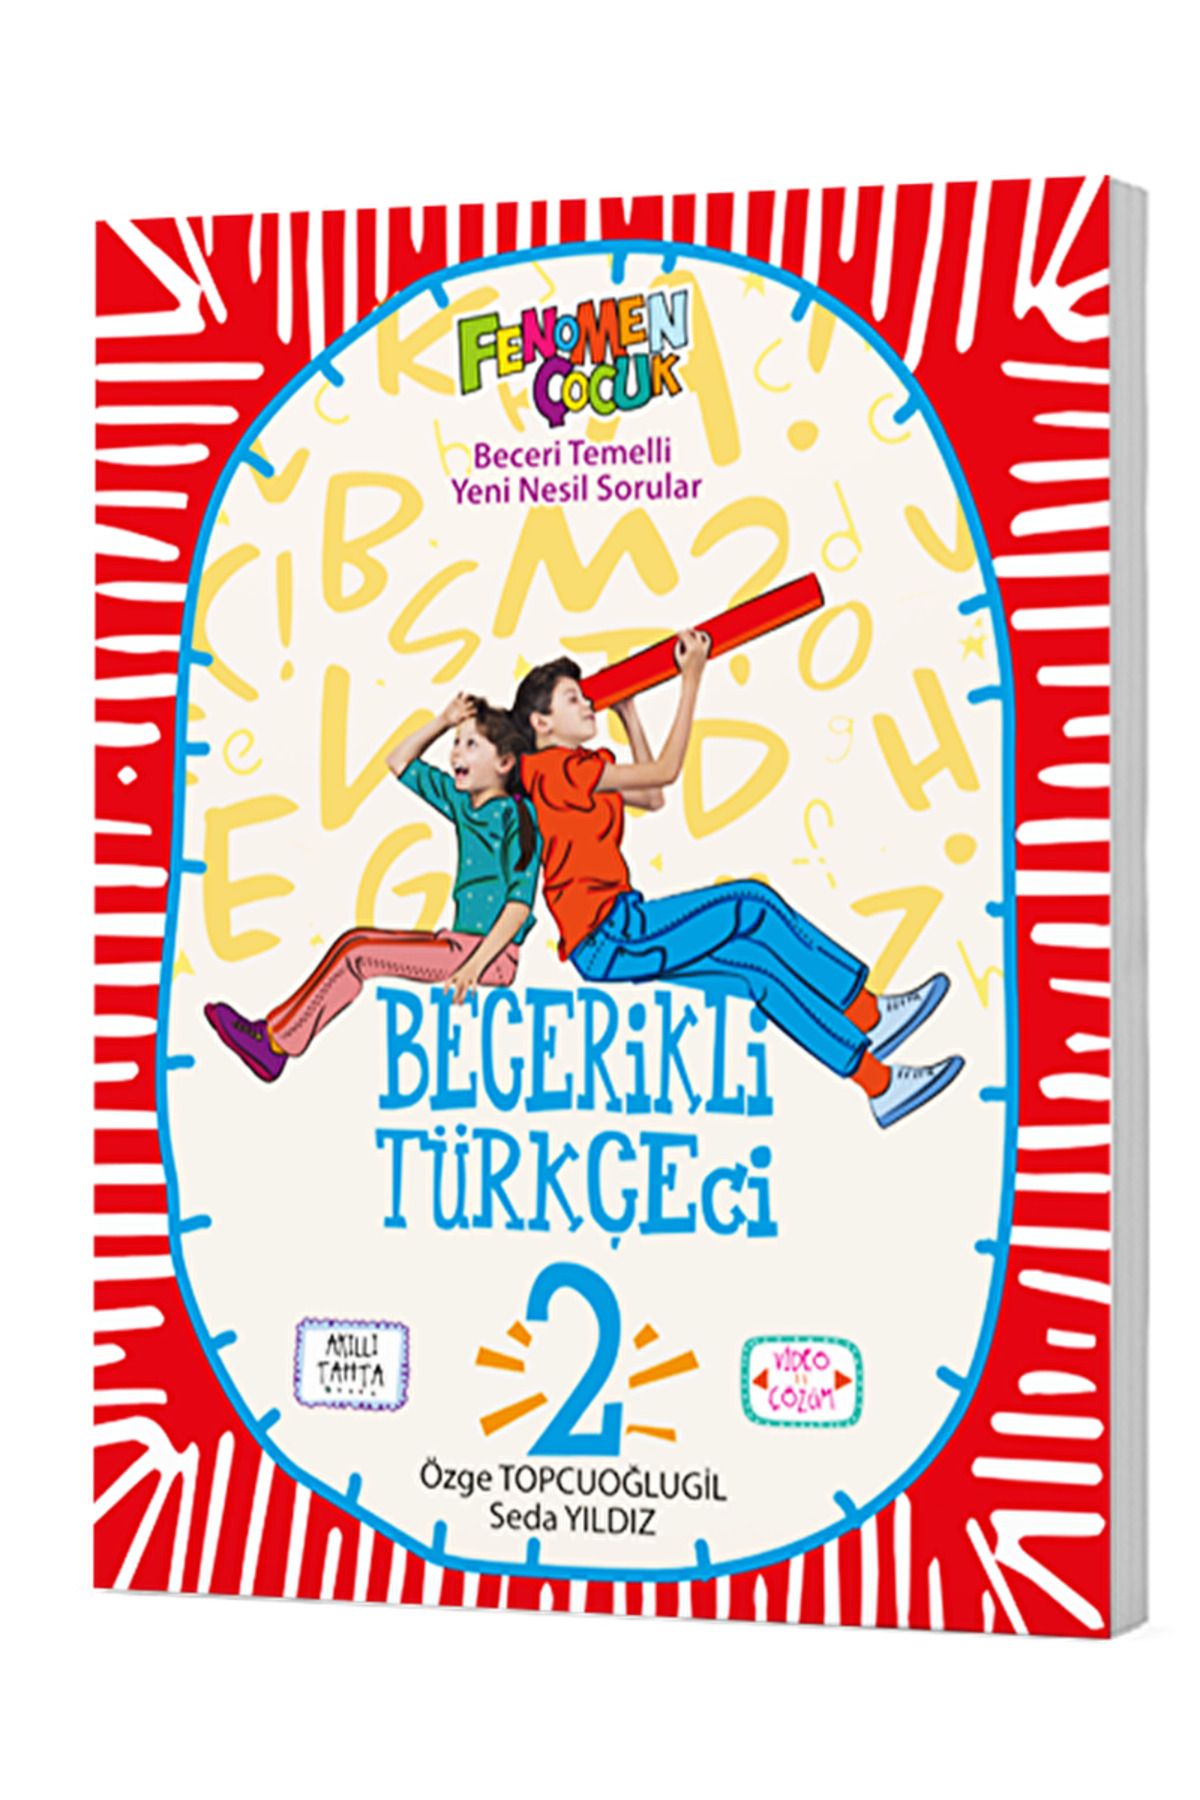 Fenomen Kitap Becerikli Türkçeci 2 / Özge Topçuoğlugil / Fenomen Kitap / 9786258450927